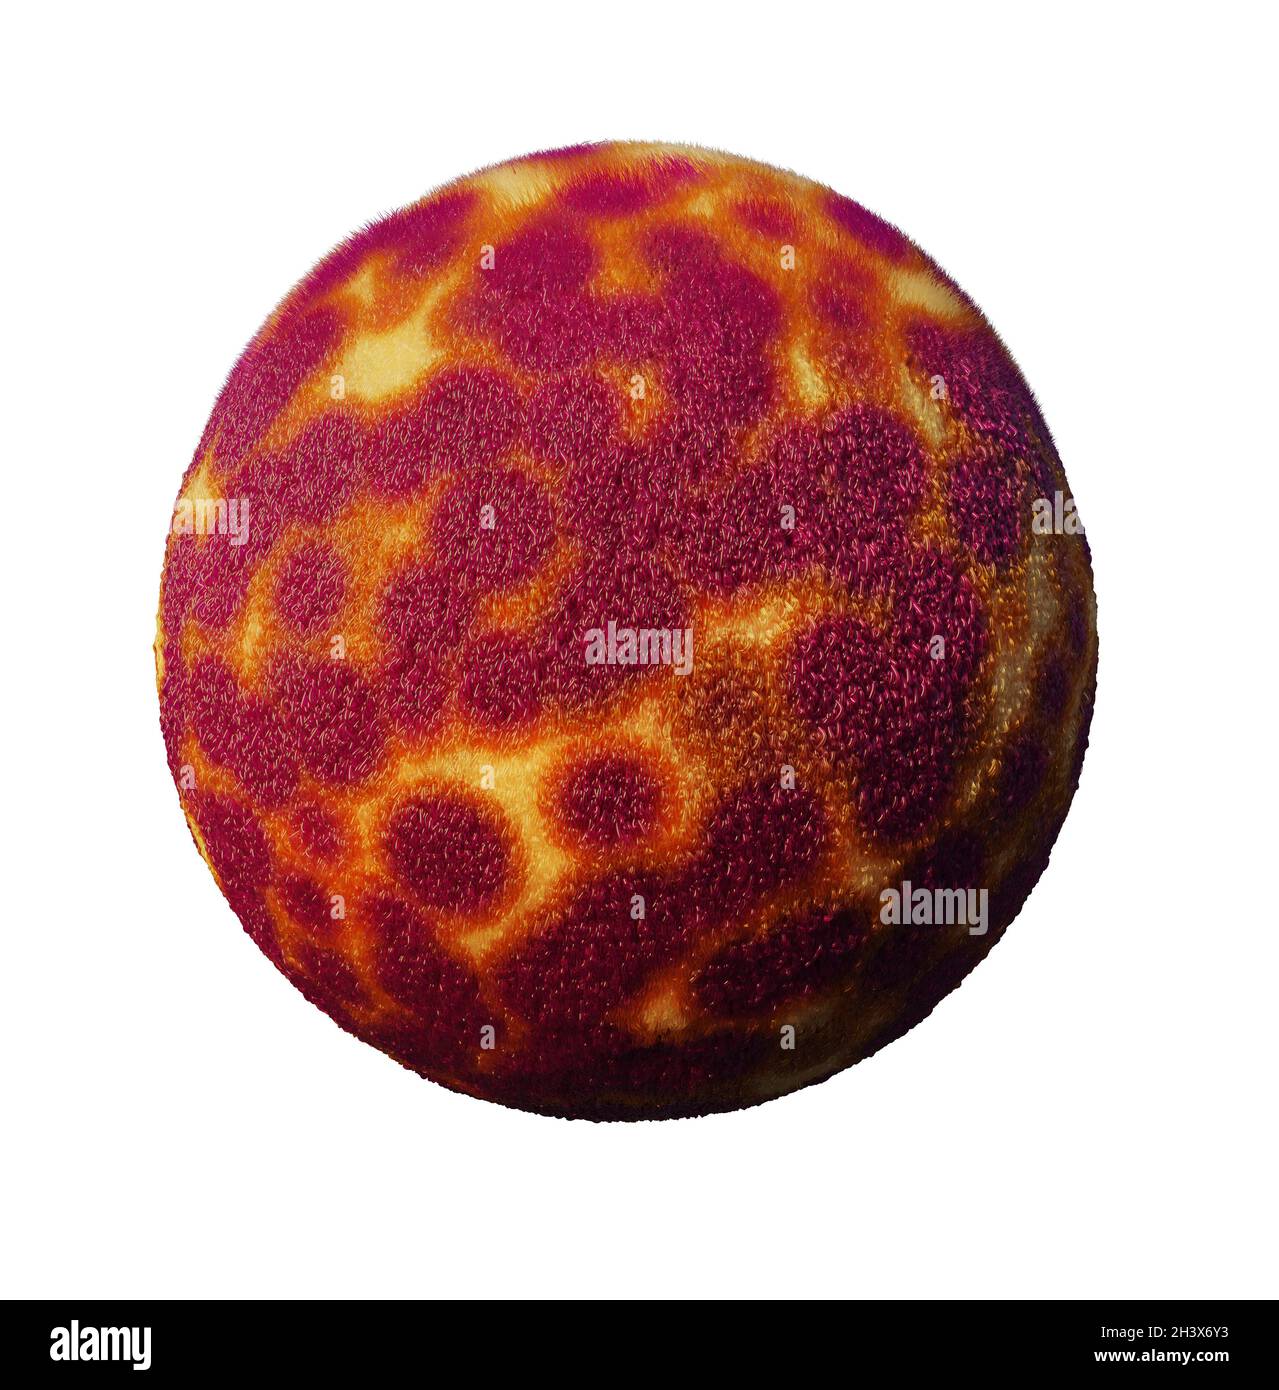 sfera pelosa, sfera di furry colorata isolata su sfondo bianco Foto Stock